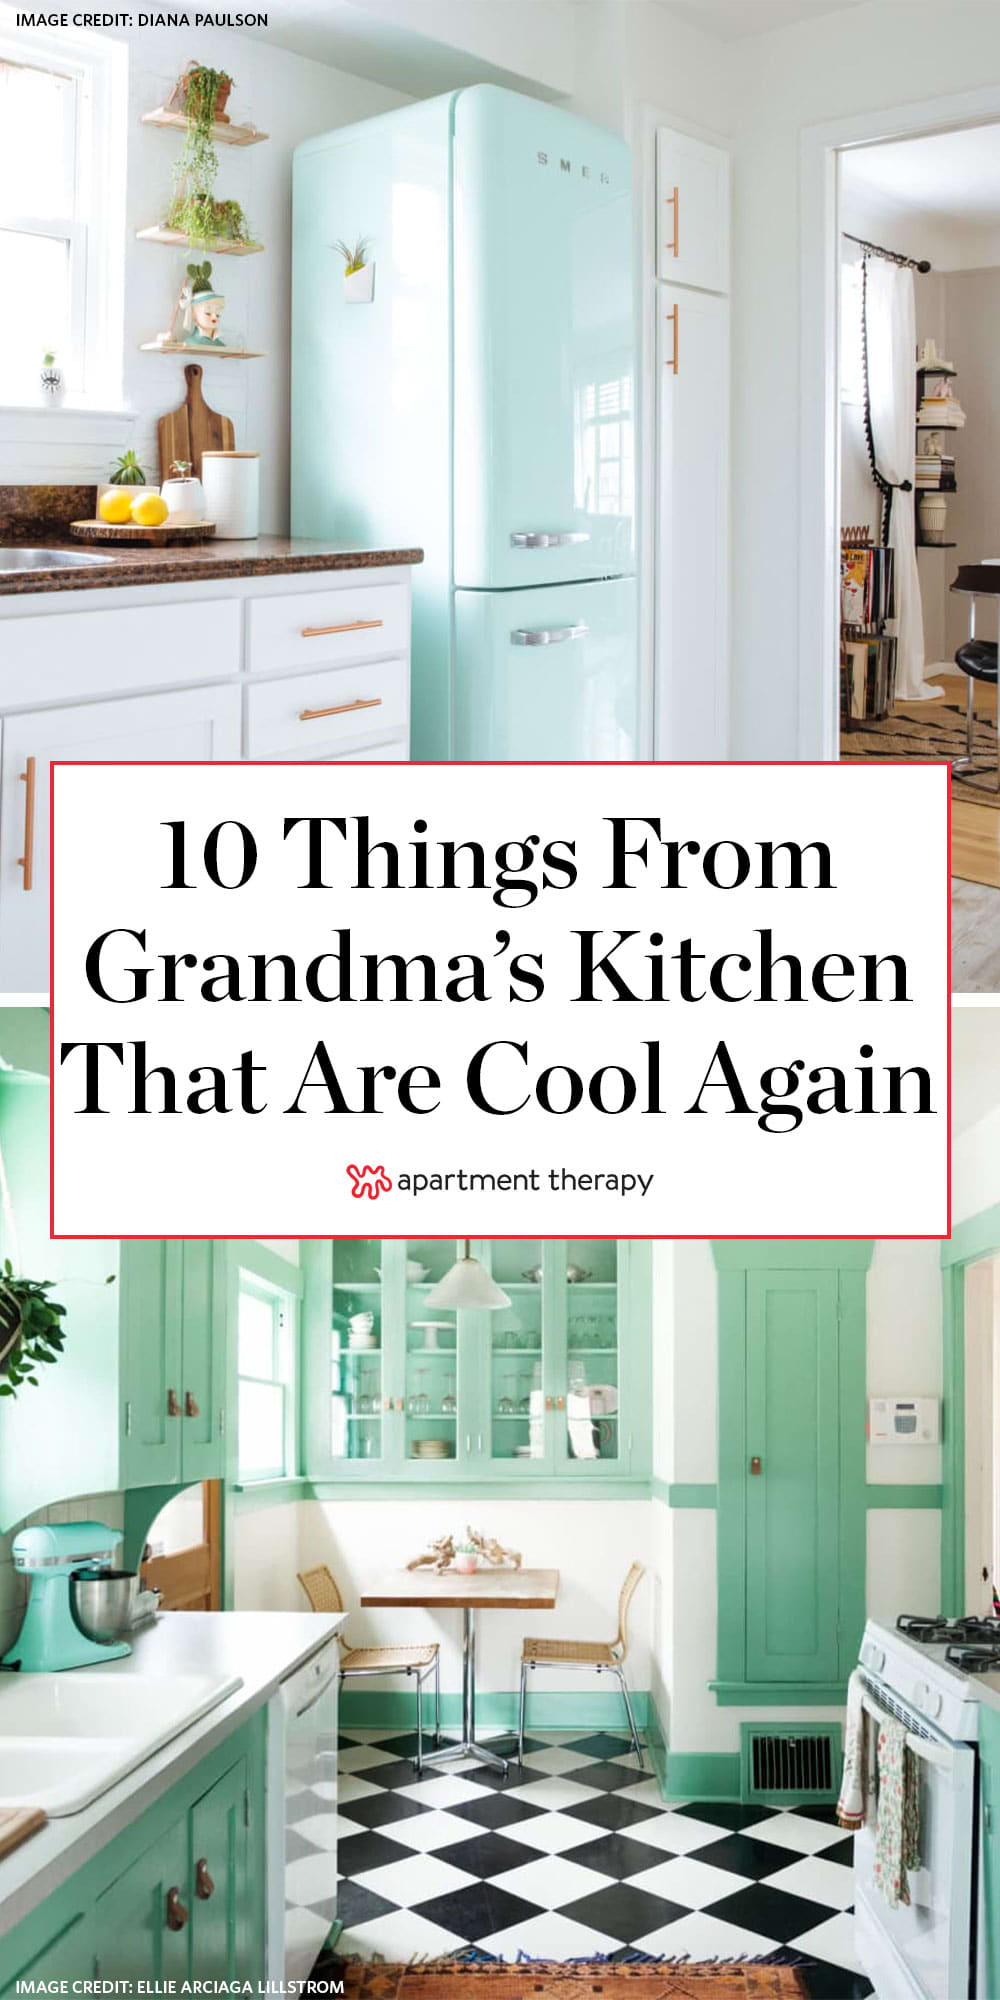 Tips to borrow from Grandma's kitchen